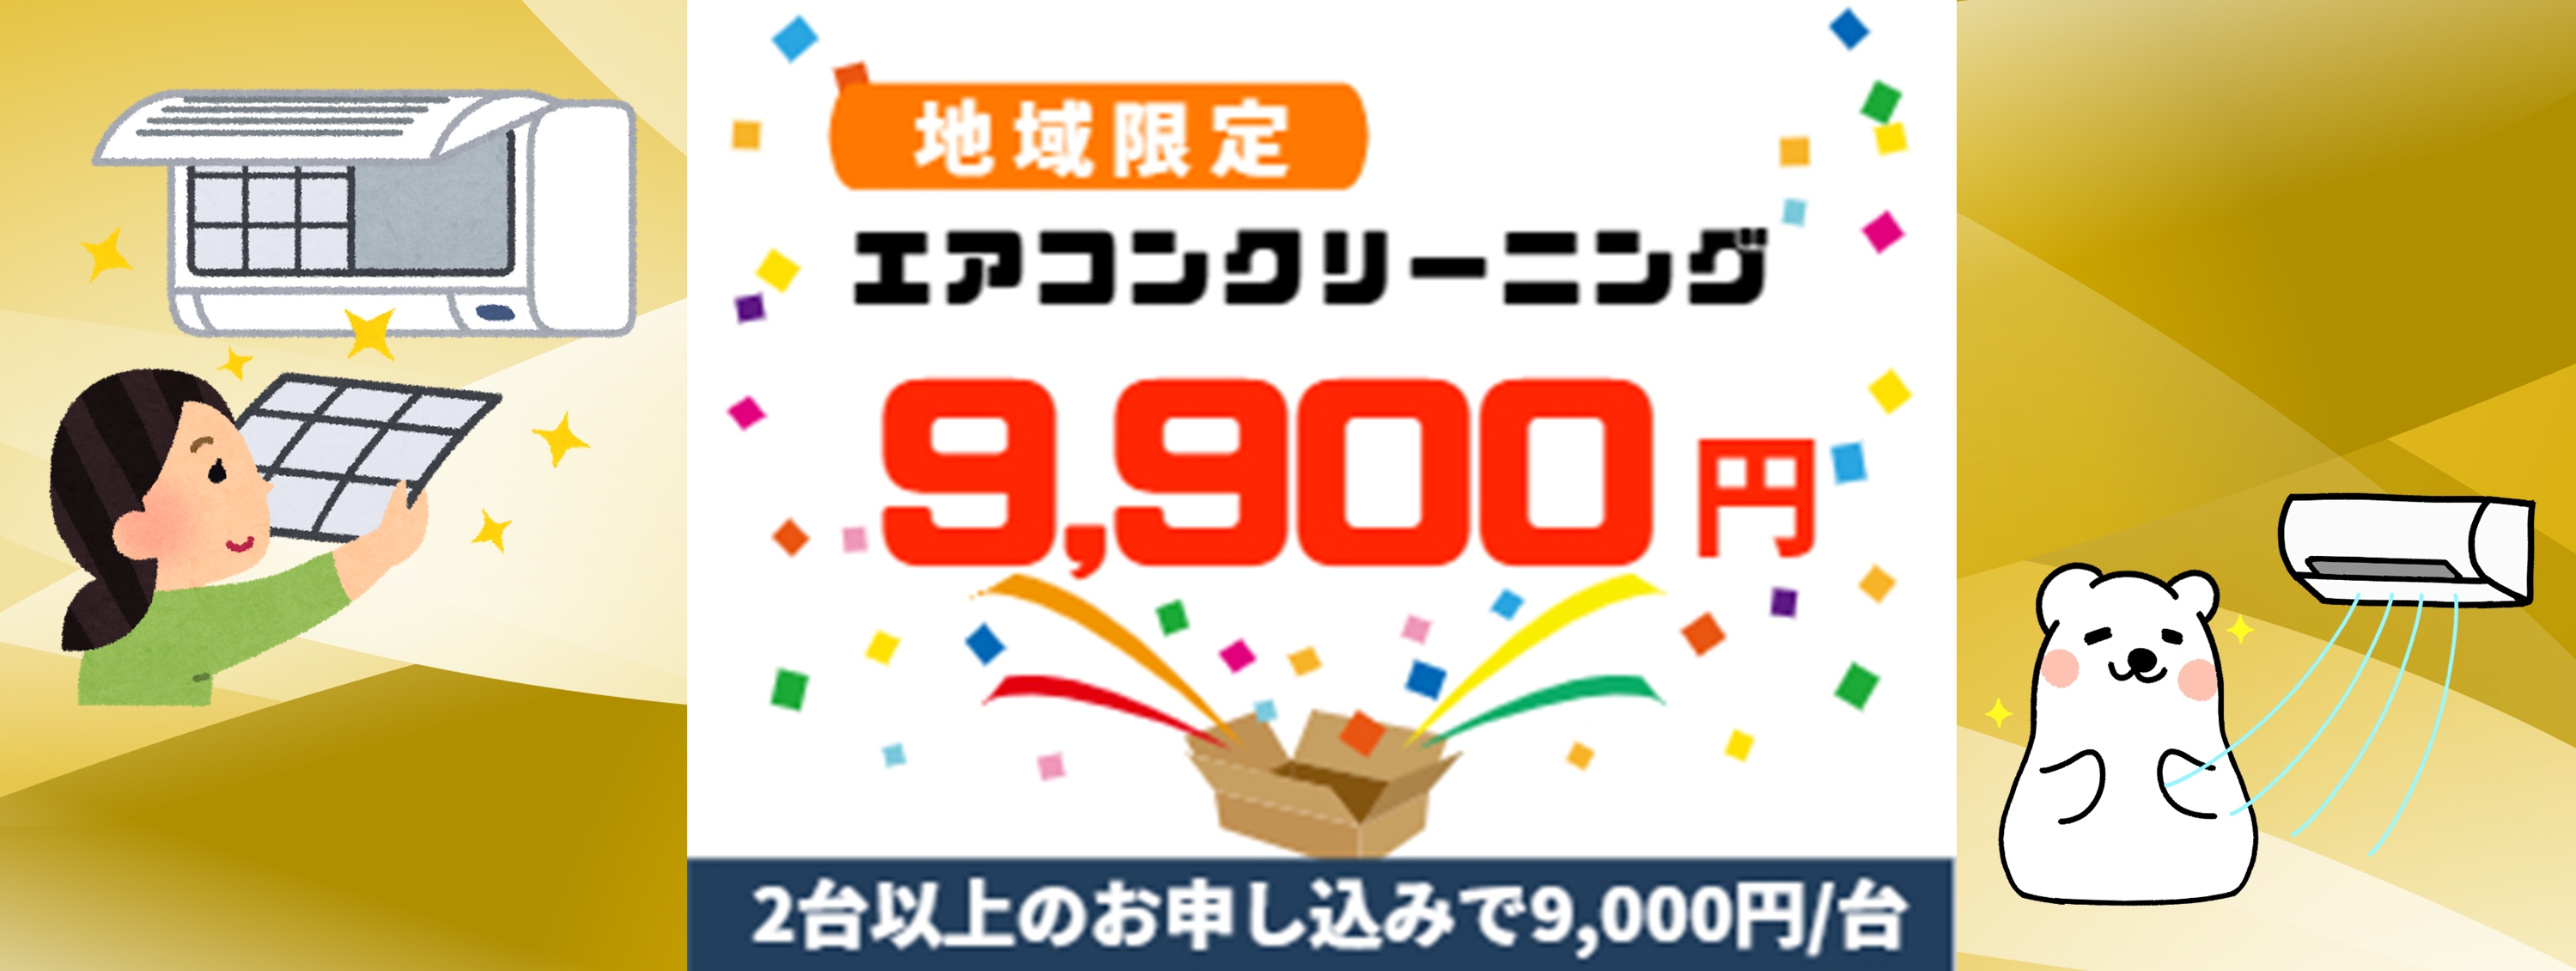 横須賀市キャンペーン価格